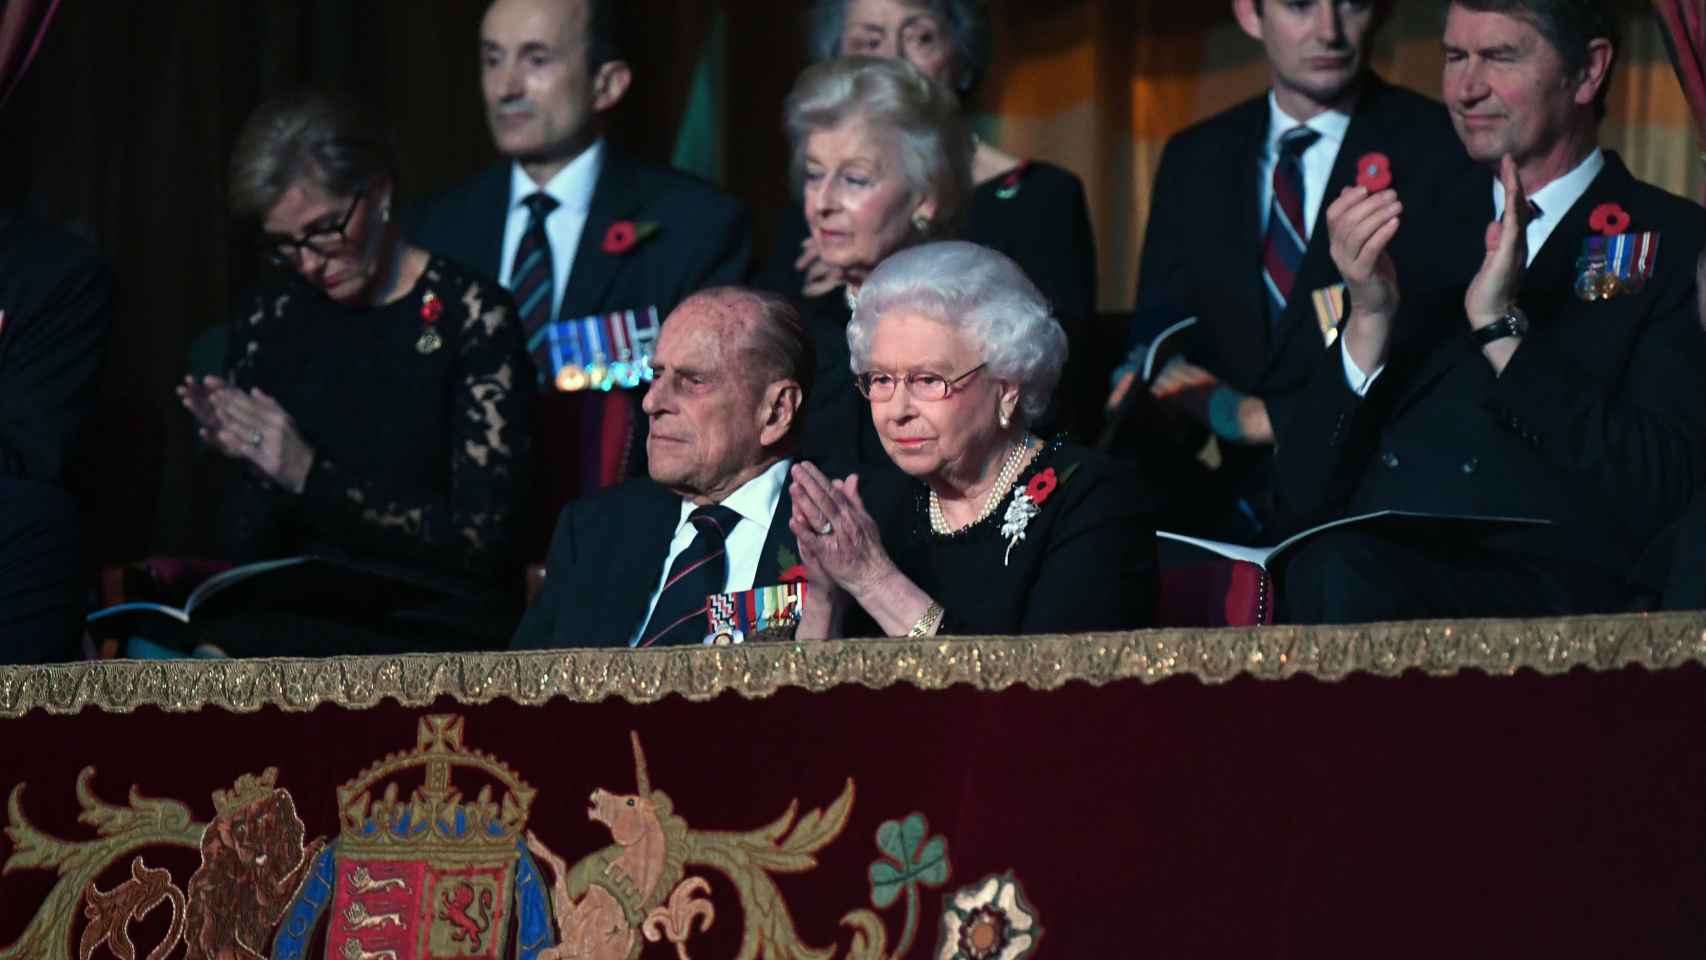 La reina Isabell II y su marido el Duque de Edimburgo en el palco del Royal Albert Hall en noviembre de este año.